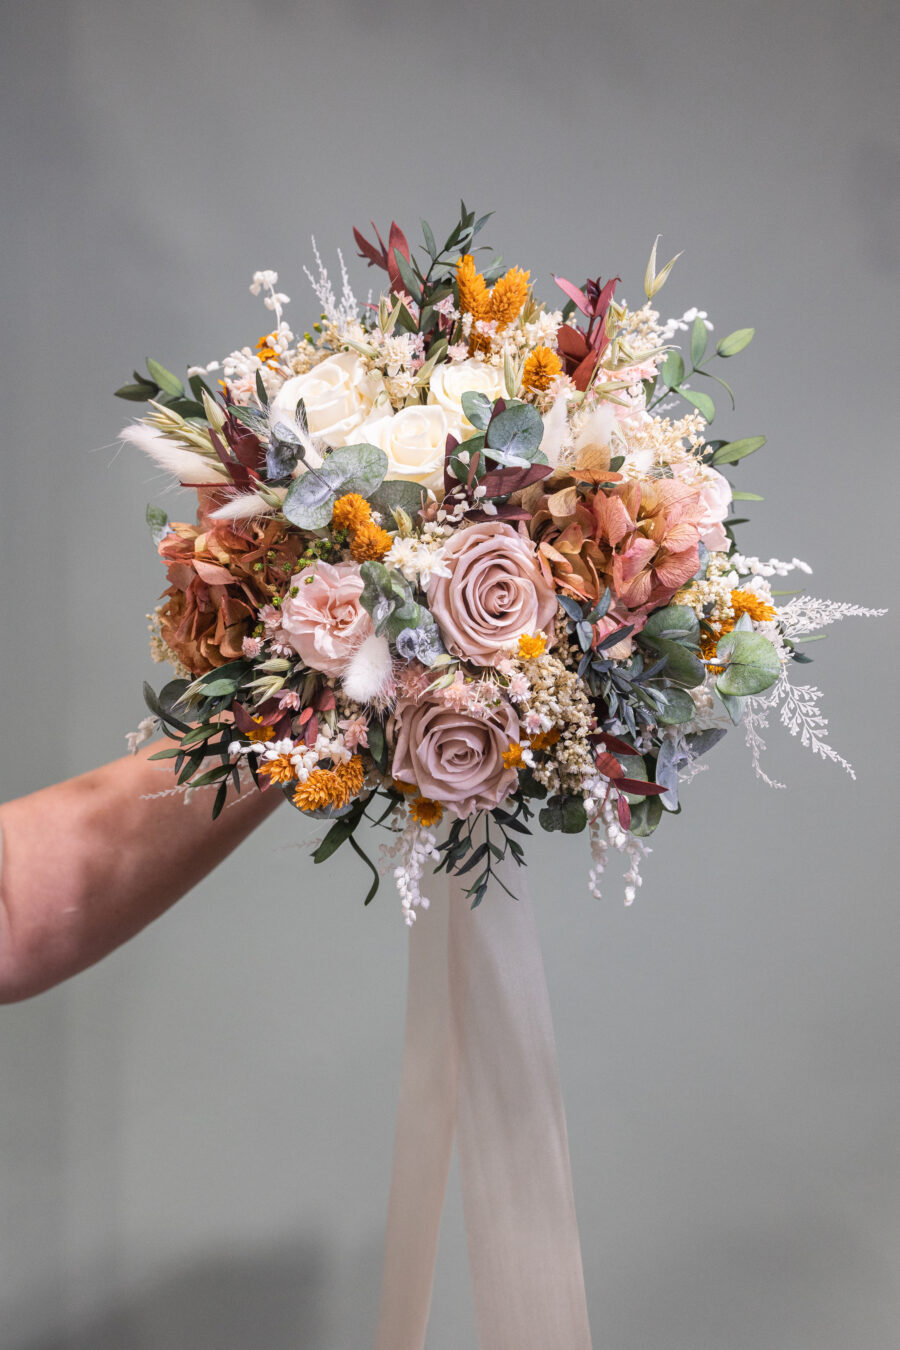 Descubre la belleza y durabilidad de los ramos de novia con flores preservadas.